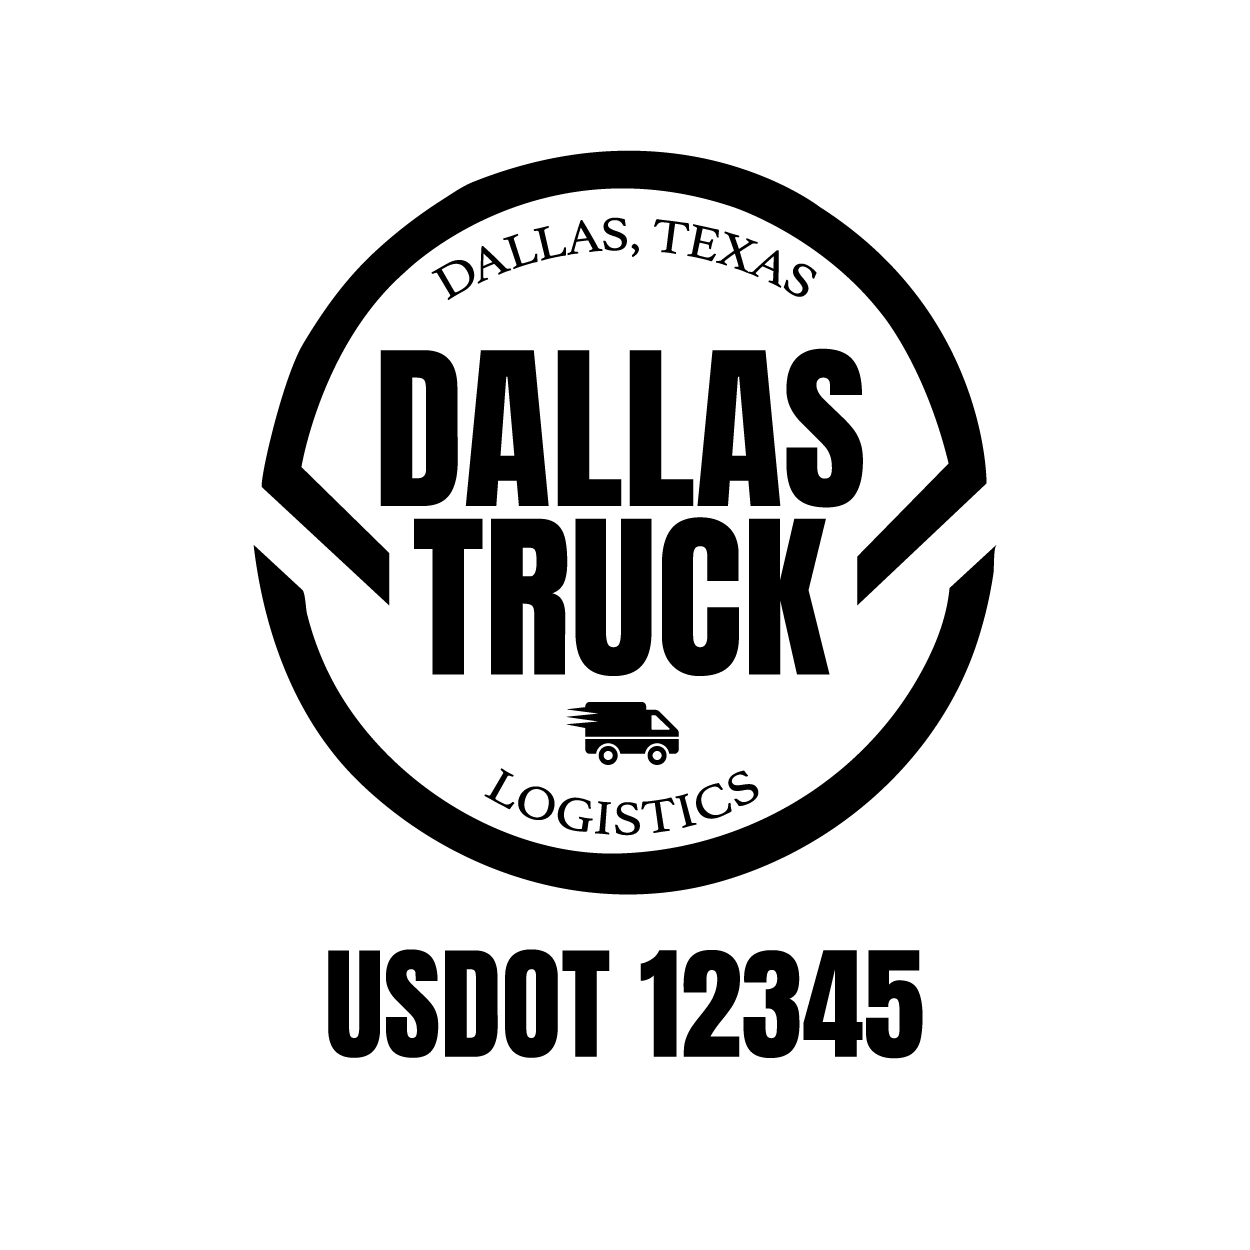 Truck door decal with USDOT 